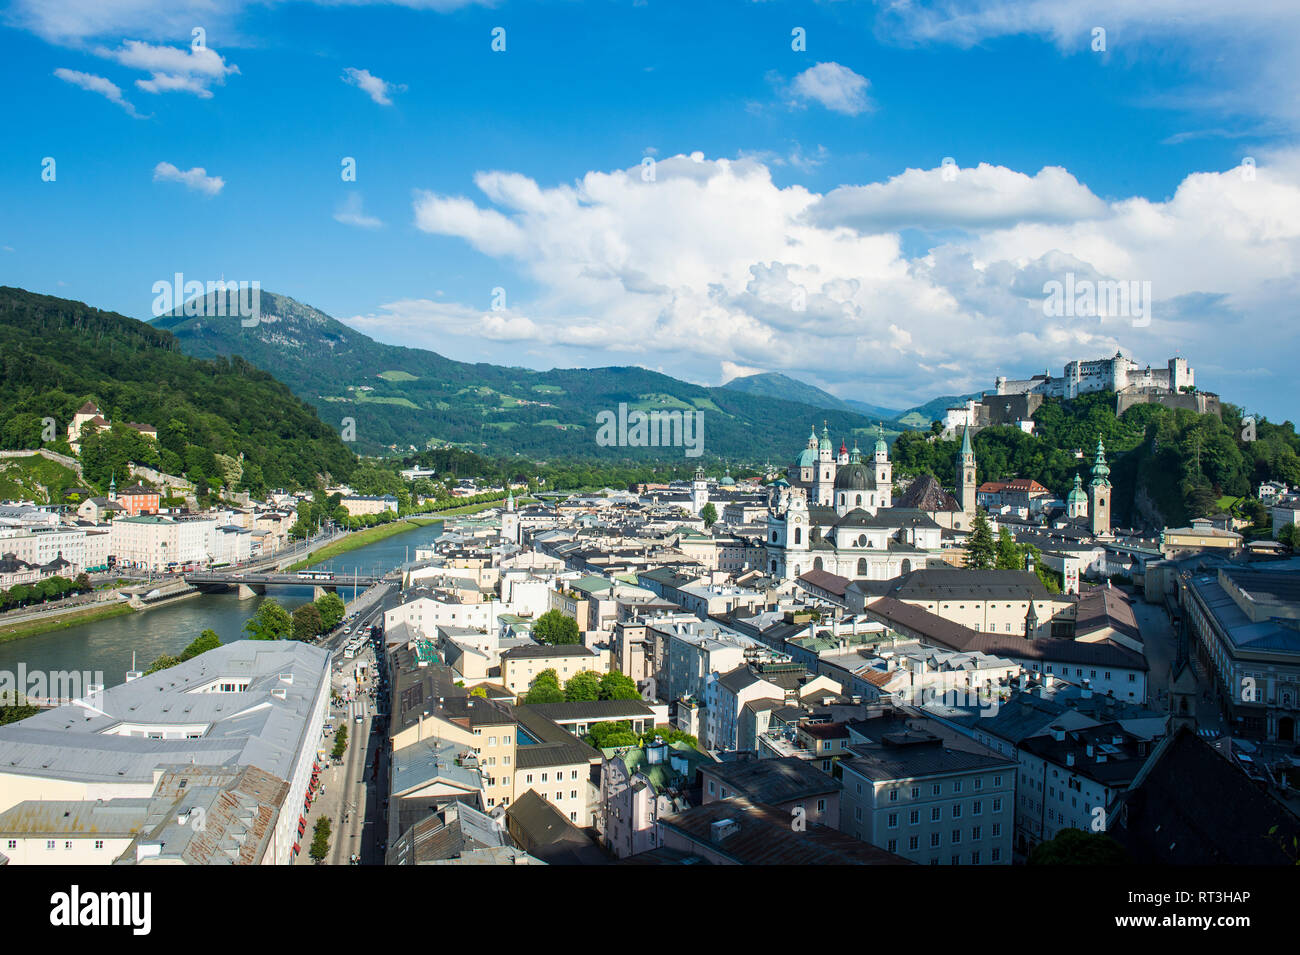 Austraia, Salzburg, Salzburg État, vue sur la ville Banque D'Images